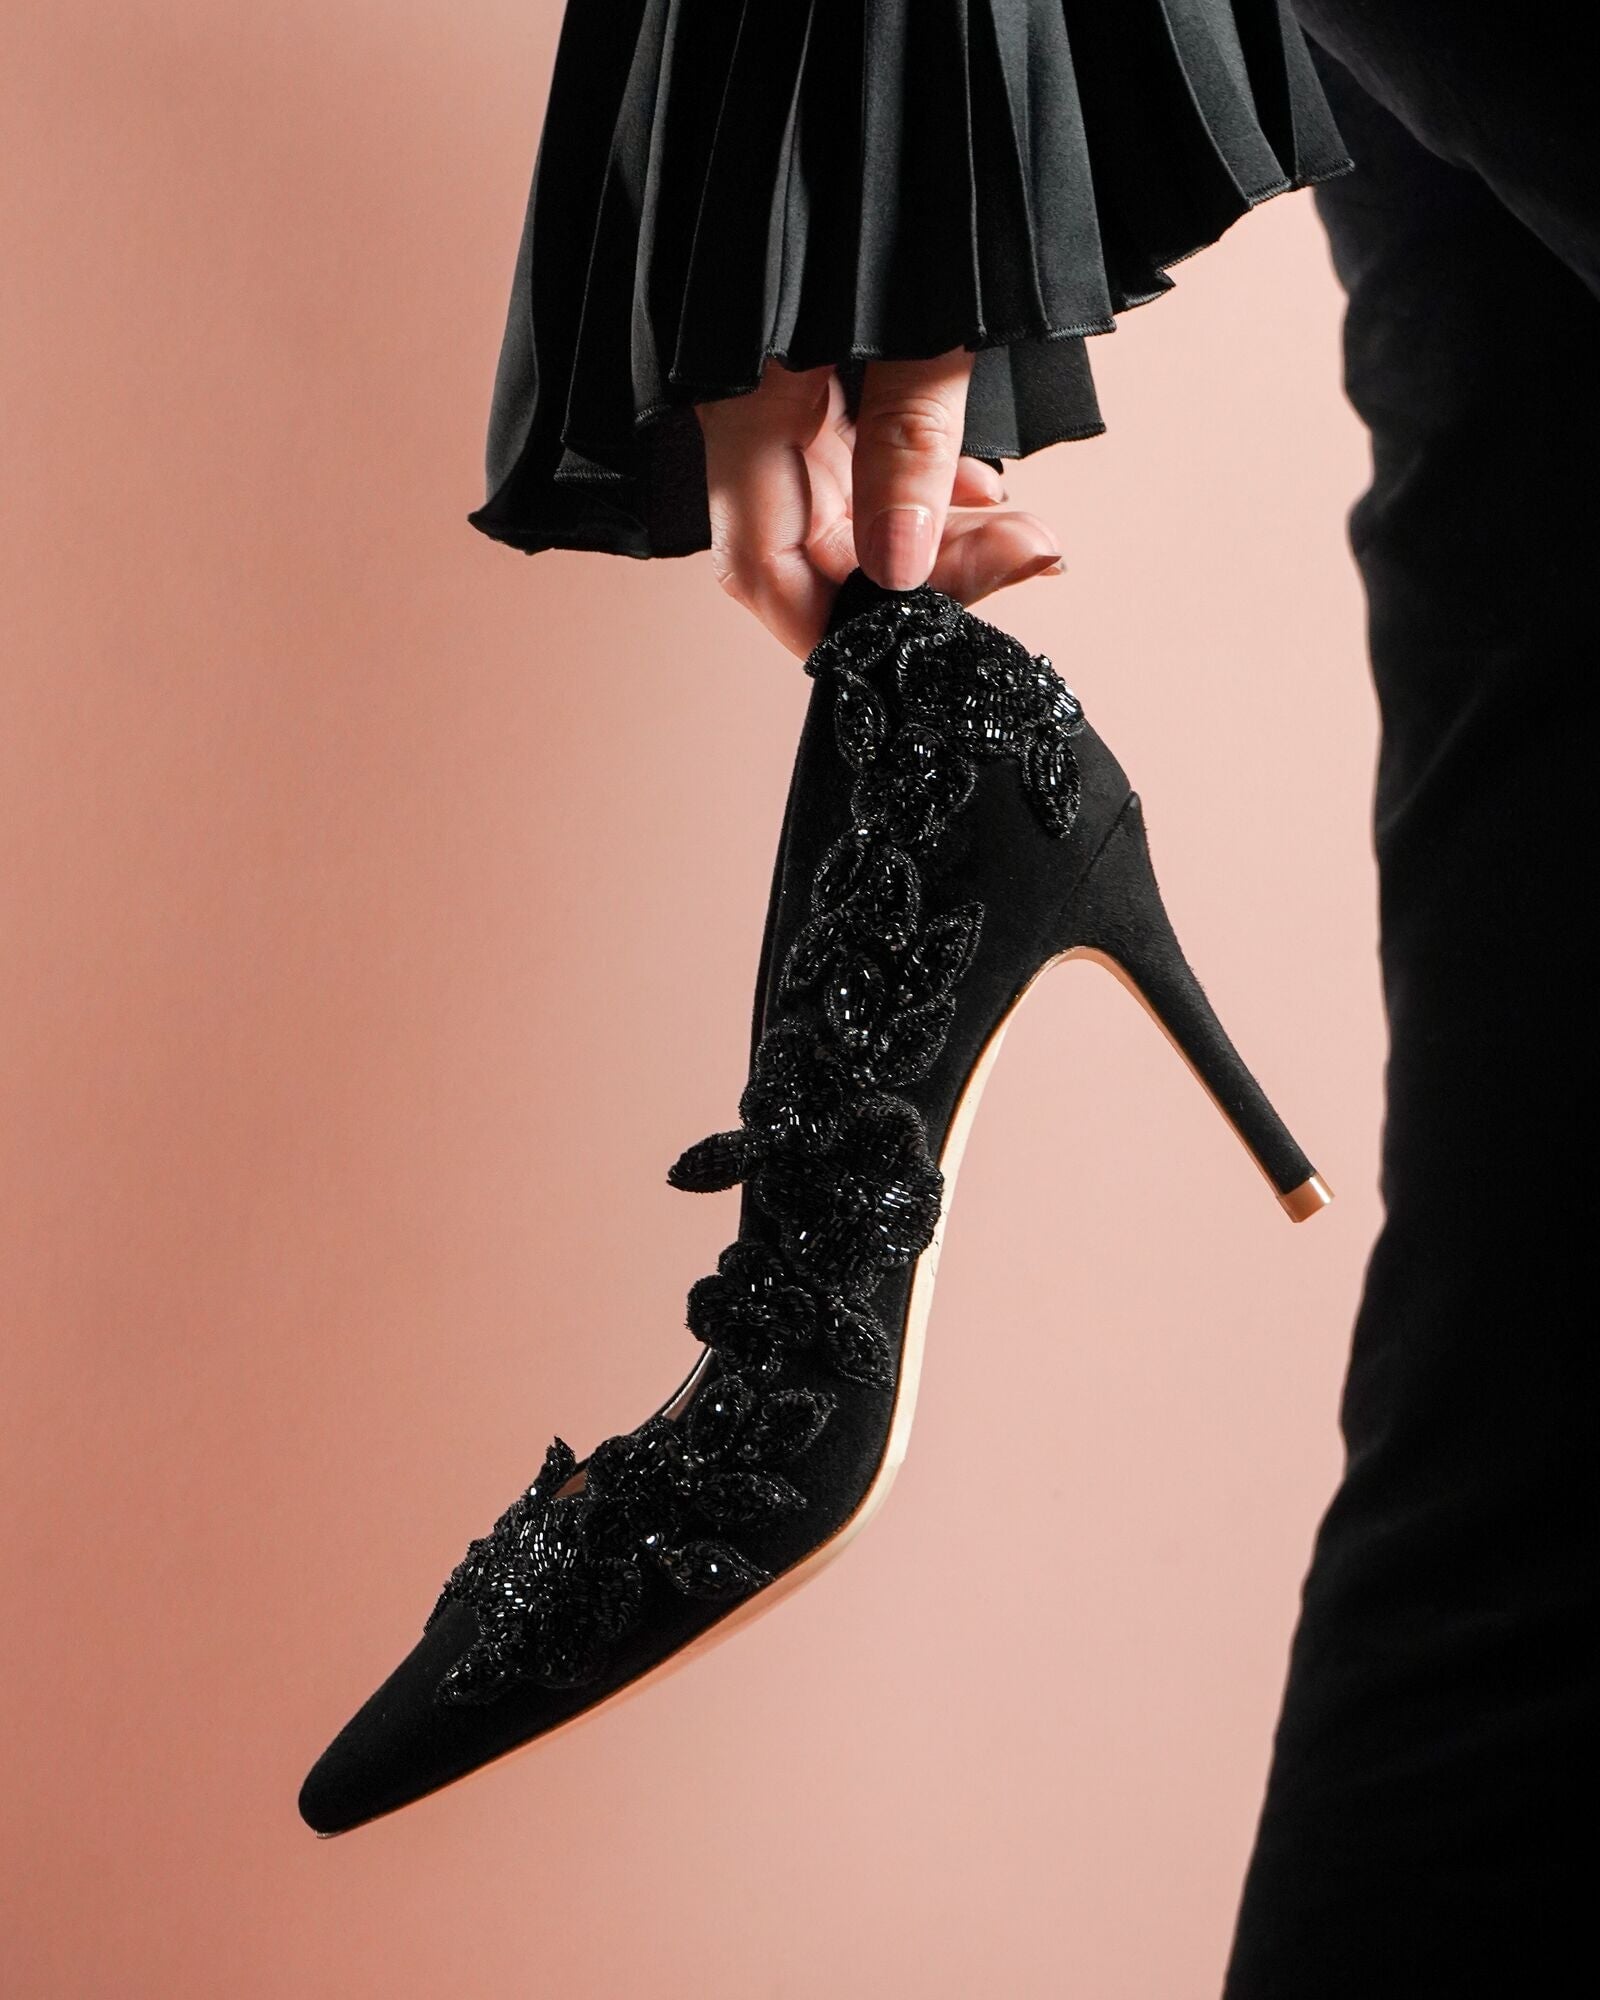 Isadora Mid Heel Fashion Shoe Floral Embellished Shoe  image